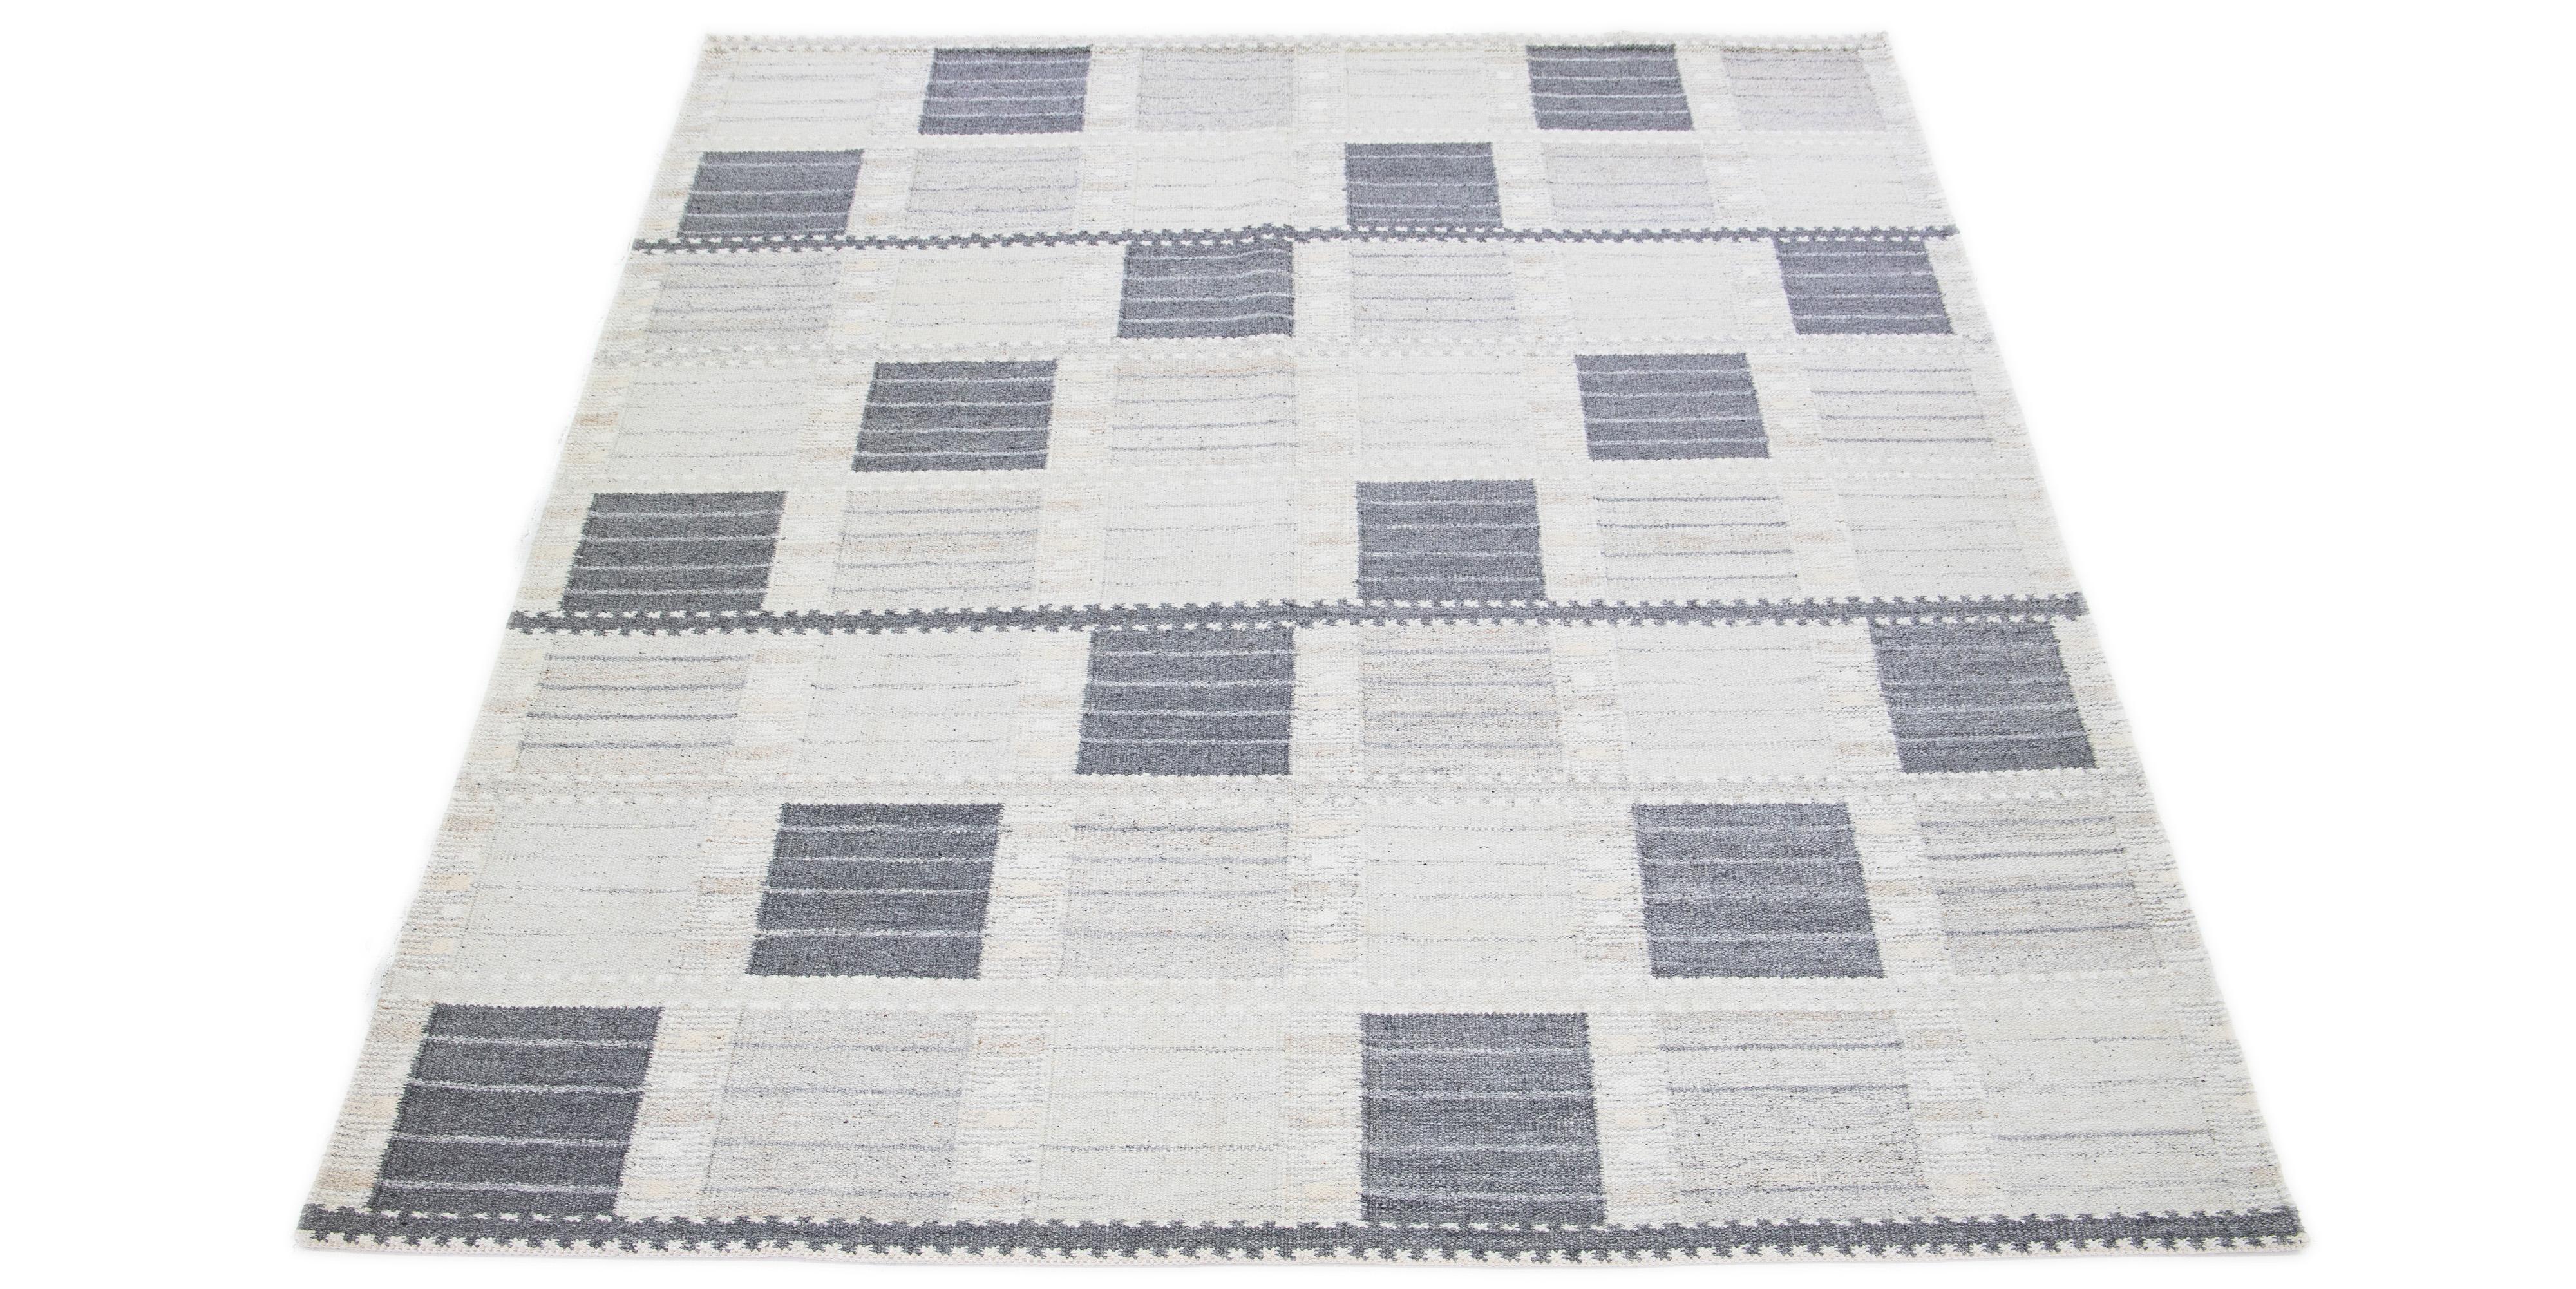 Inspiré du Design-Light, ce tapis moderne en laine présente une subtile toile de fond gris clair. Ce tapis exquis à tissage plat est magnifiquement orné d'un motif géométrique saisissant dans les tons gris foncé et beige.

 Ce tapis mesure 9'4